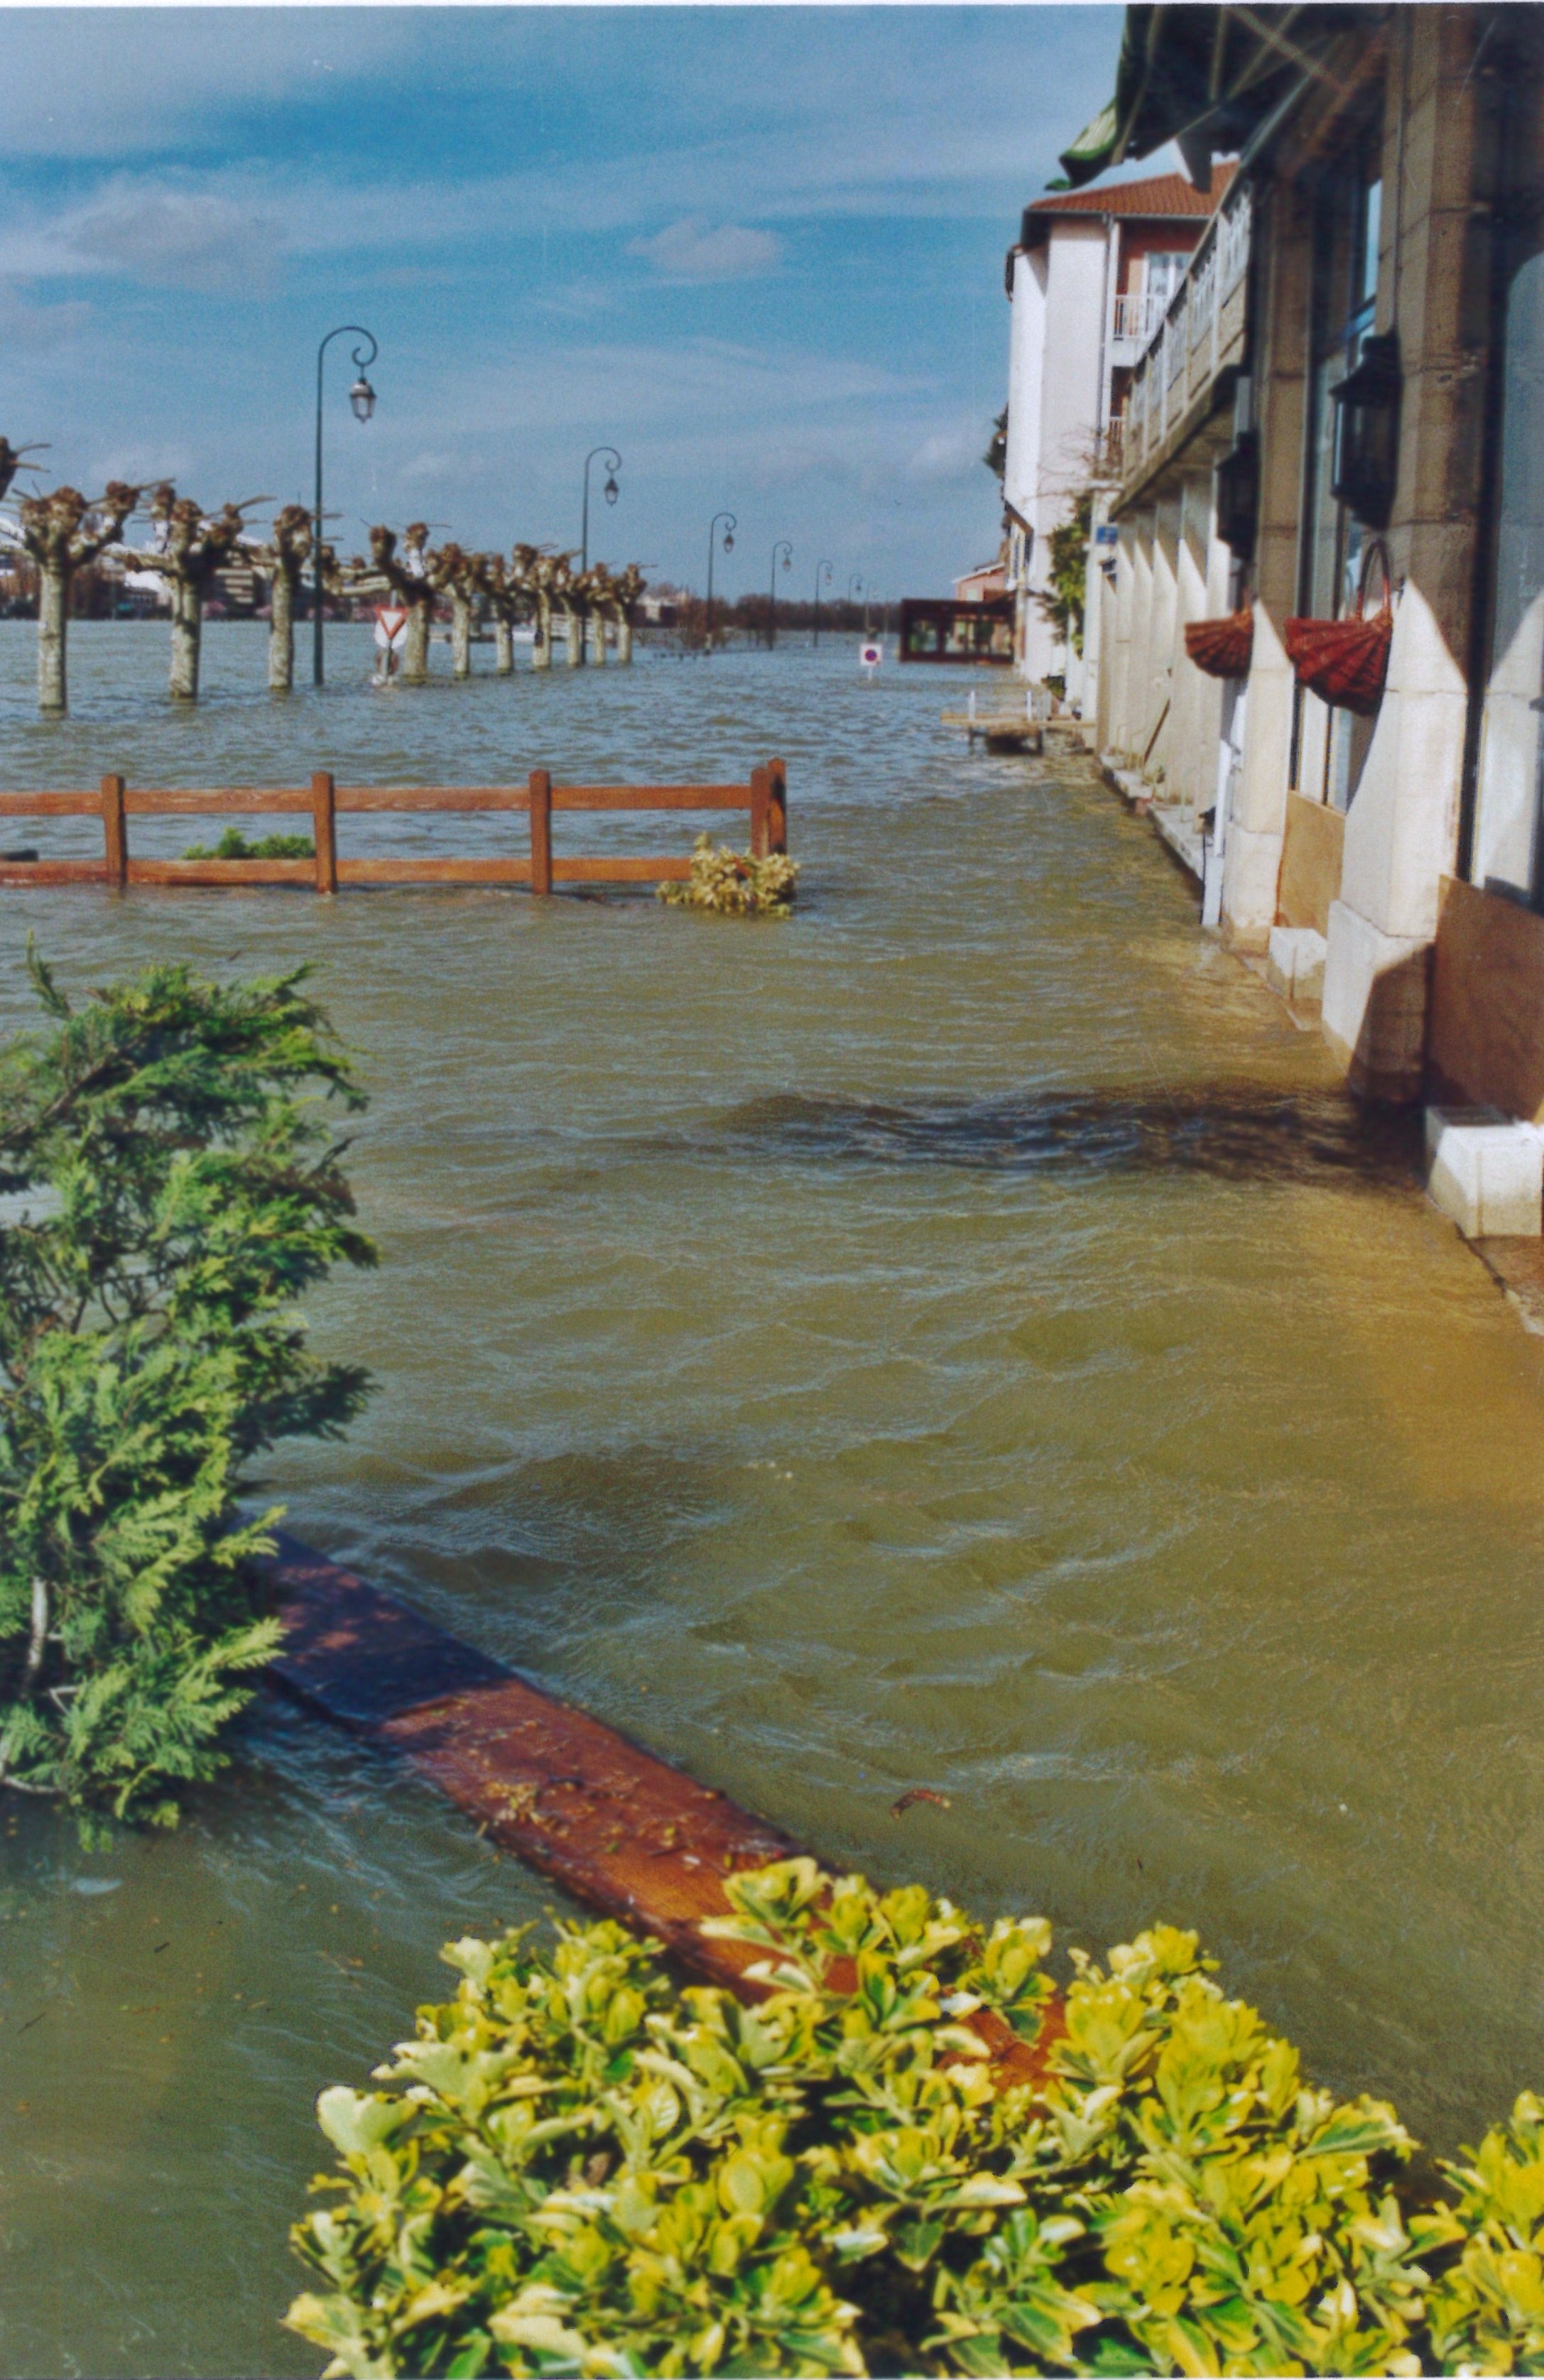 Crue de la Saône en 2001 à St Laurent-sur-Saône